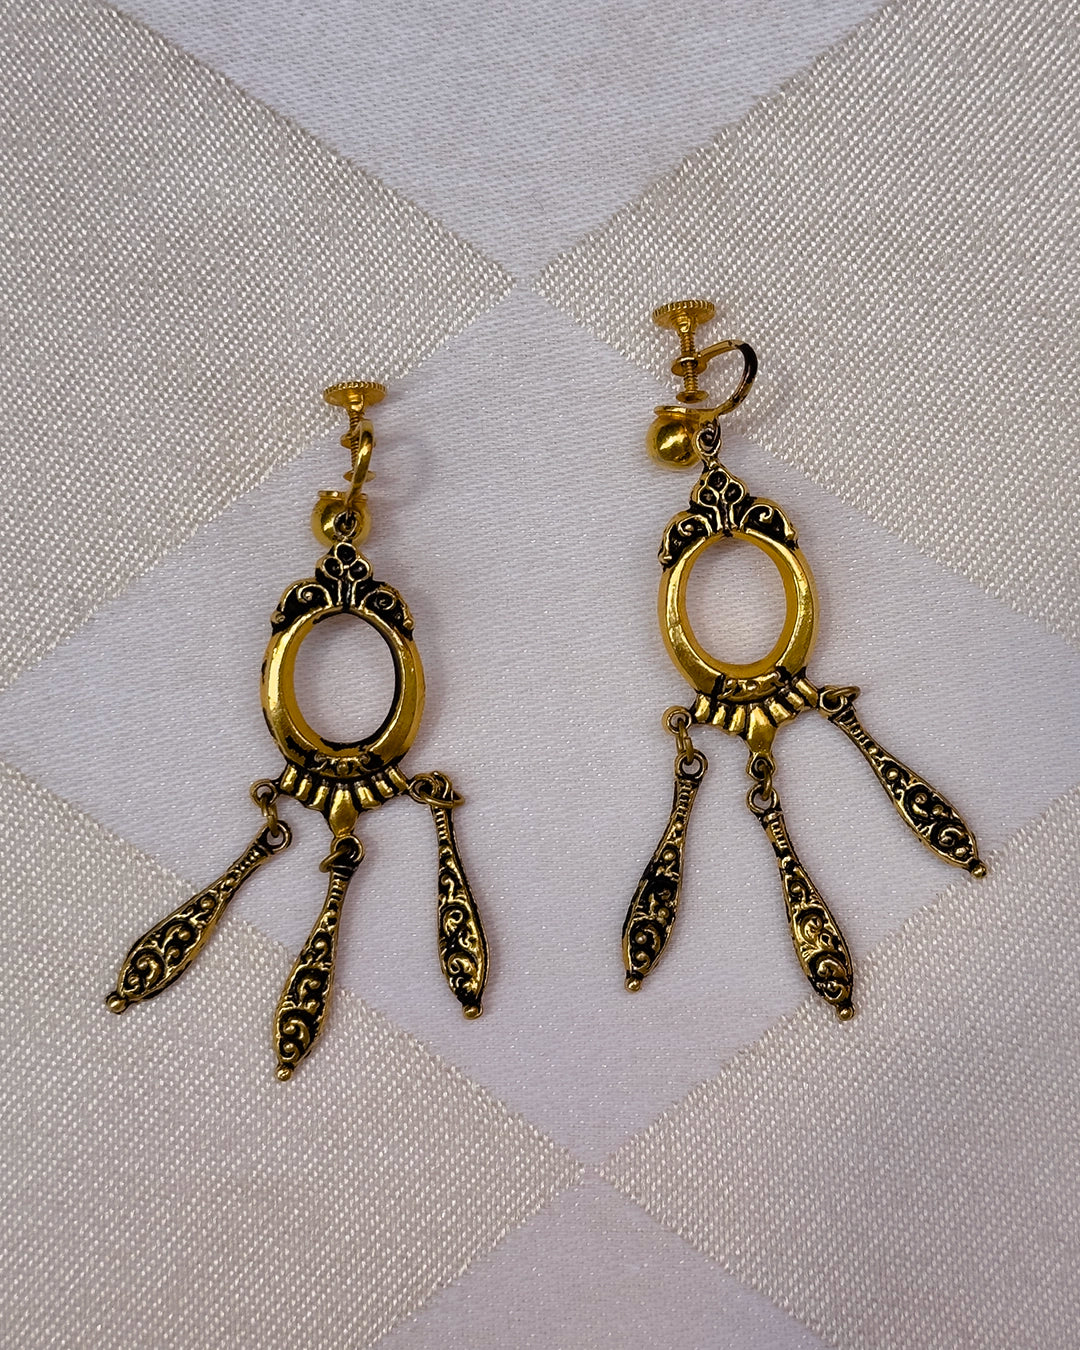 Vintage Victorian-Style Gold Girandole Chandelier Earrings